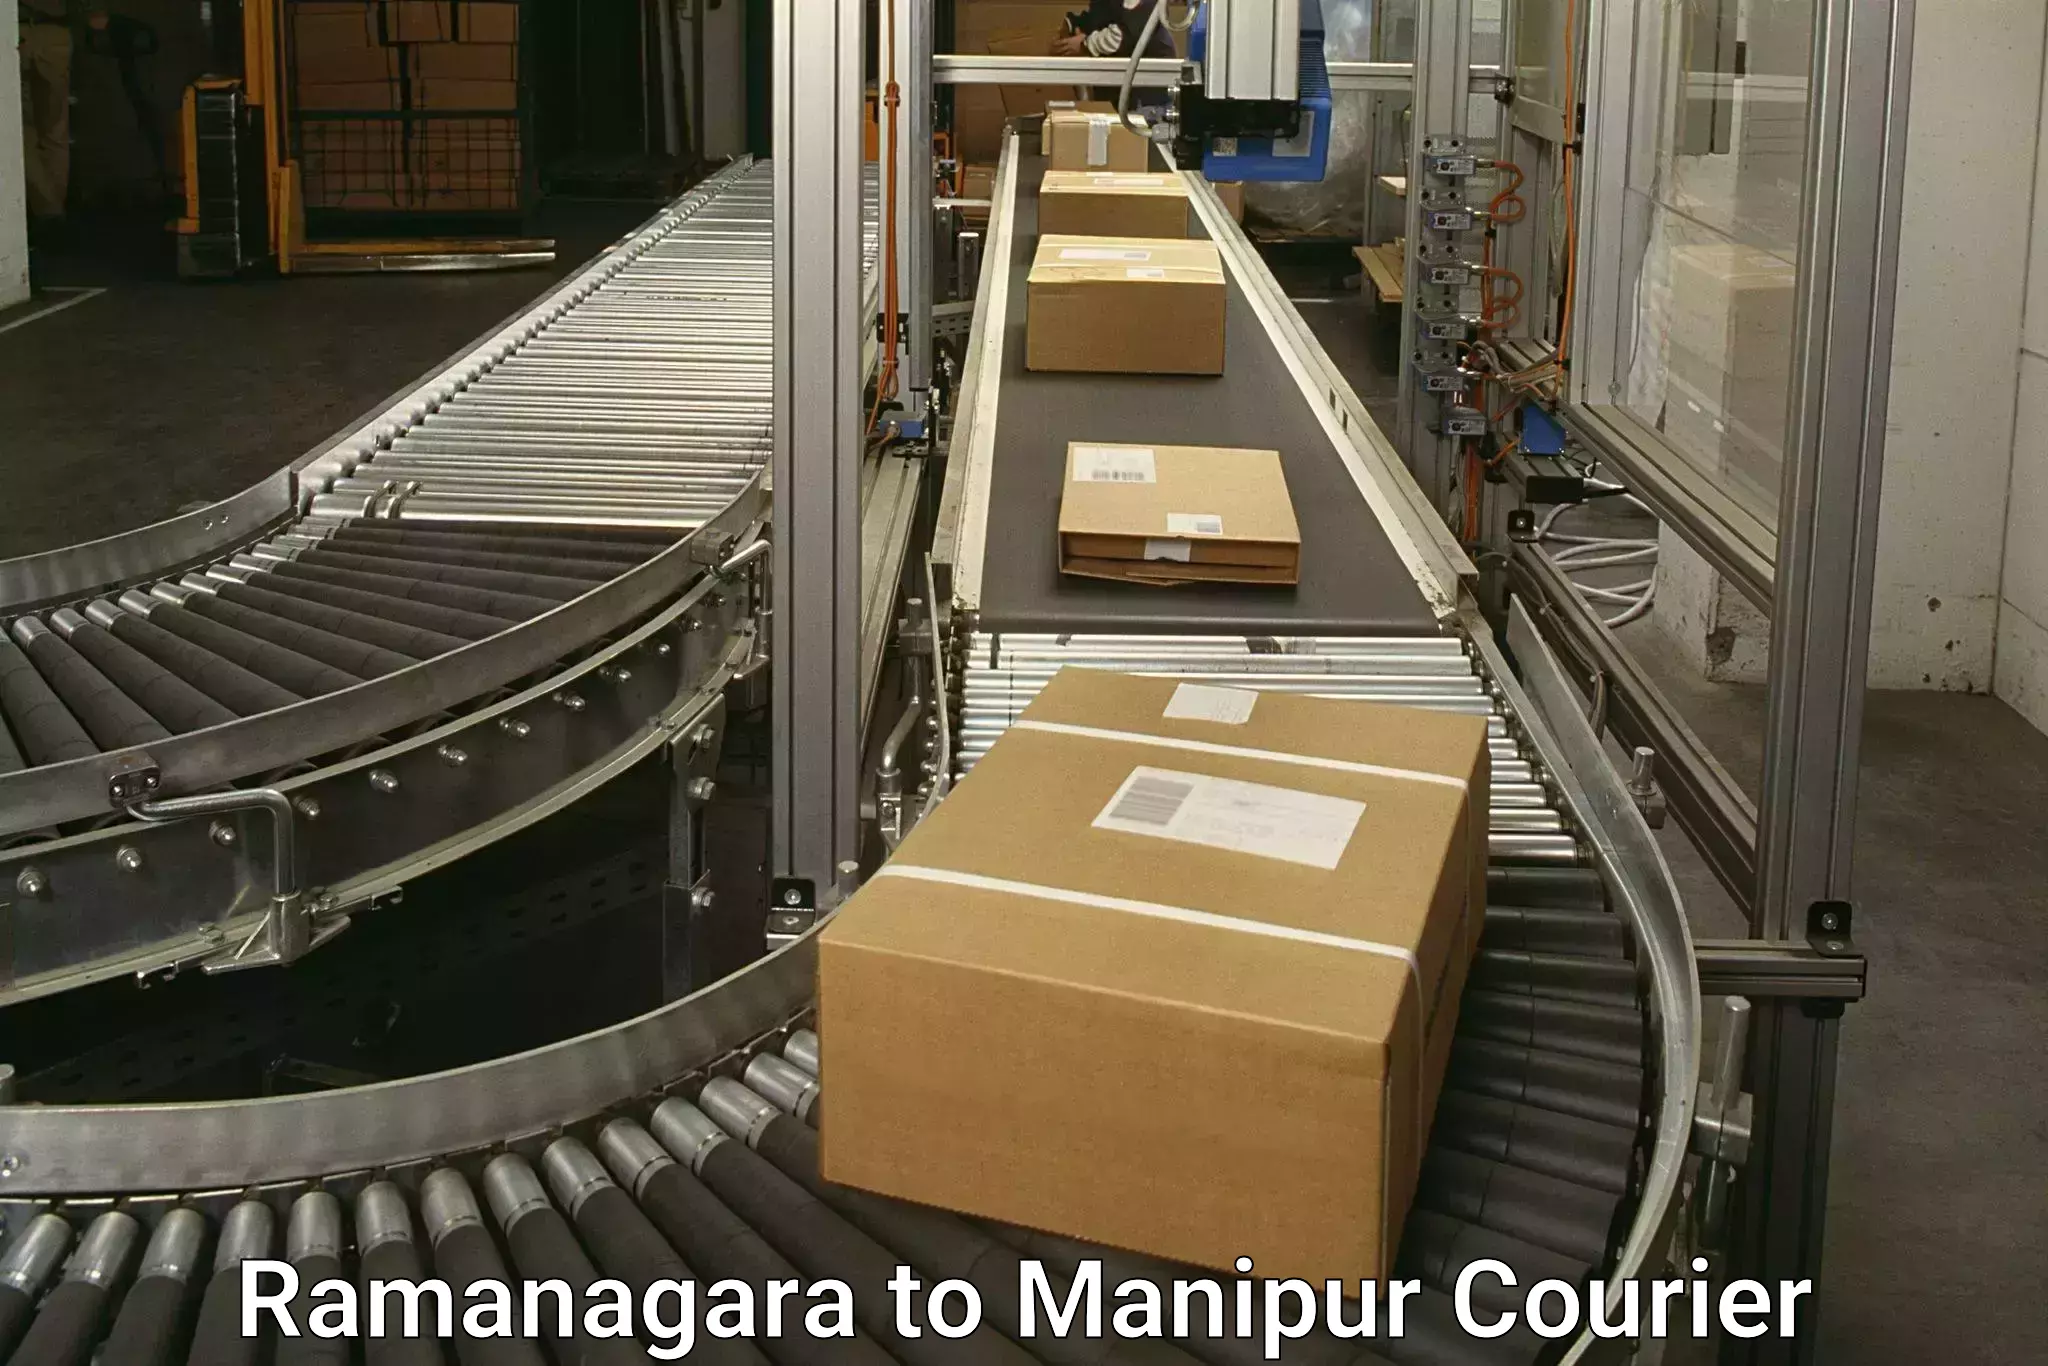 Premium courier services Ramanagara to Chandel